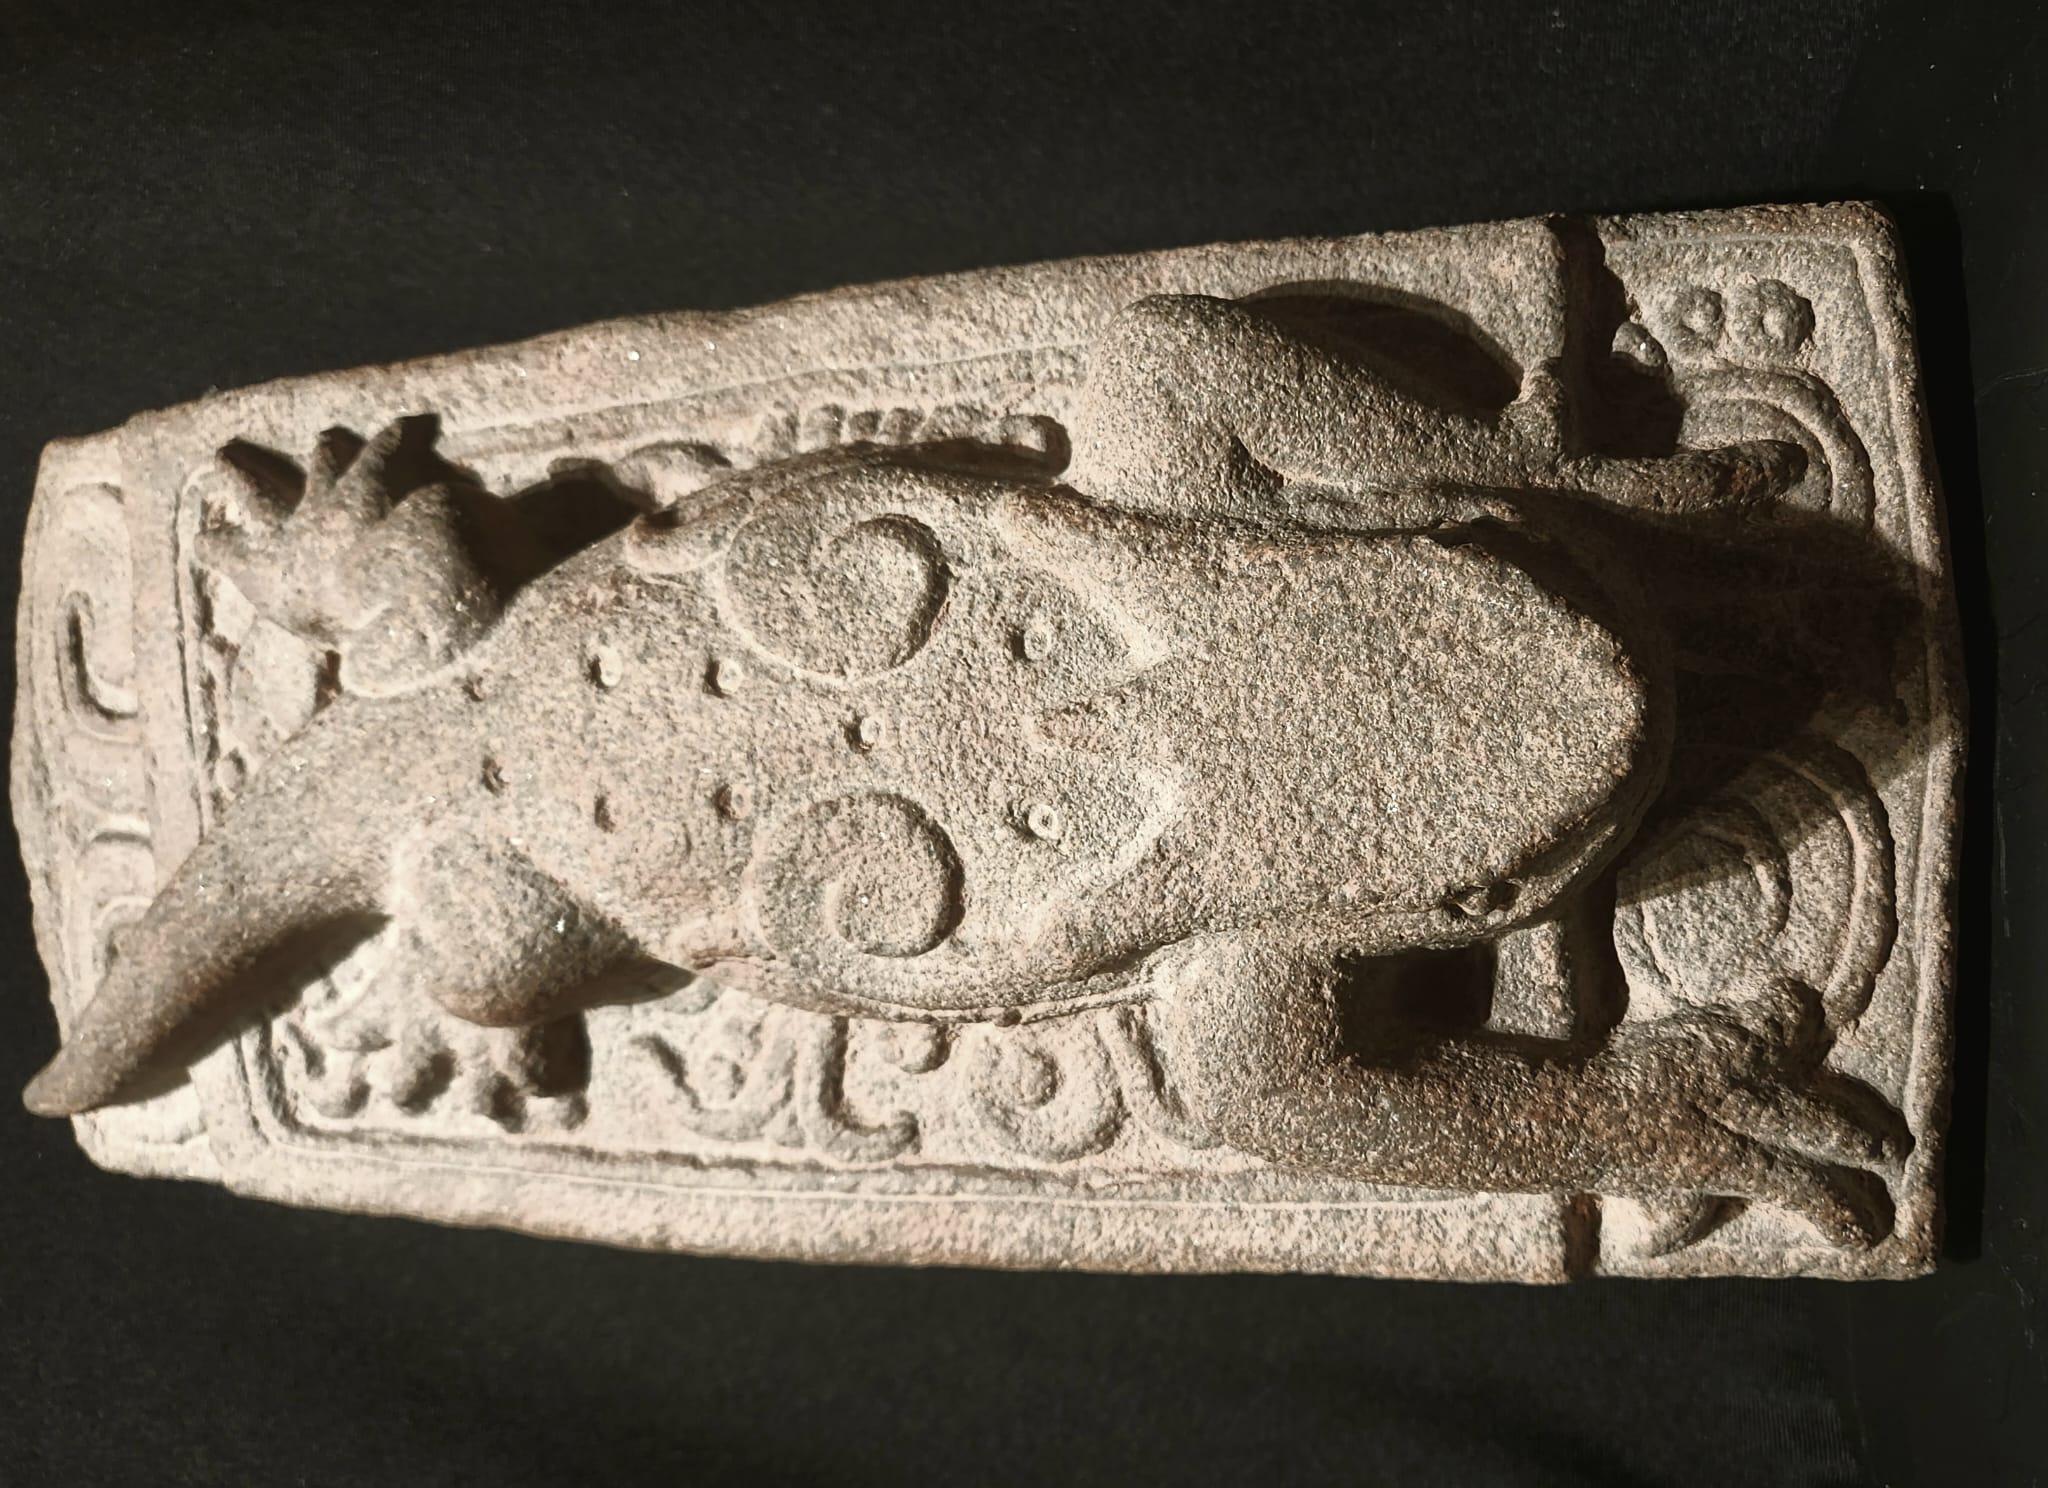 Eine prächtige Relieftafel mit der Darstellung der Maya-Gottheit Itzamna in Form eines Leguans, der sich auf einer Plattform ausstreckt und seine langen Gliedmaßen ausbreitet